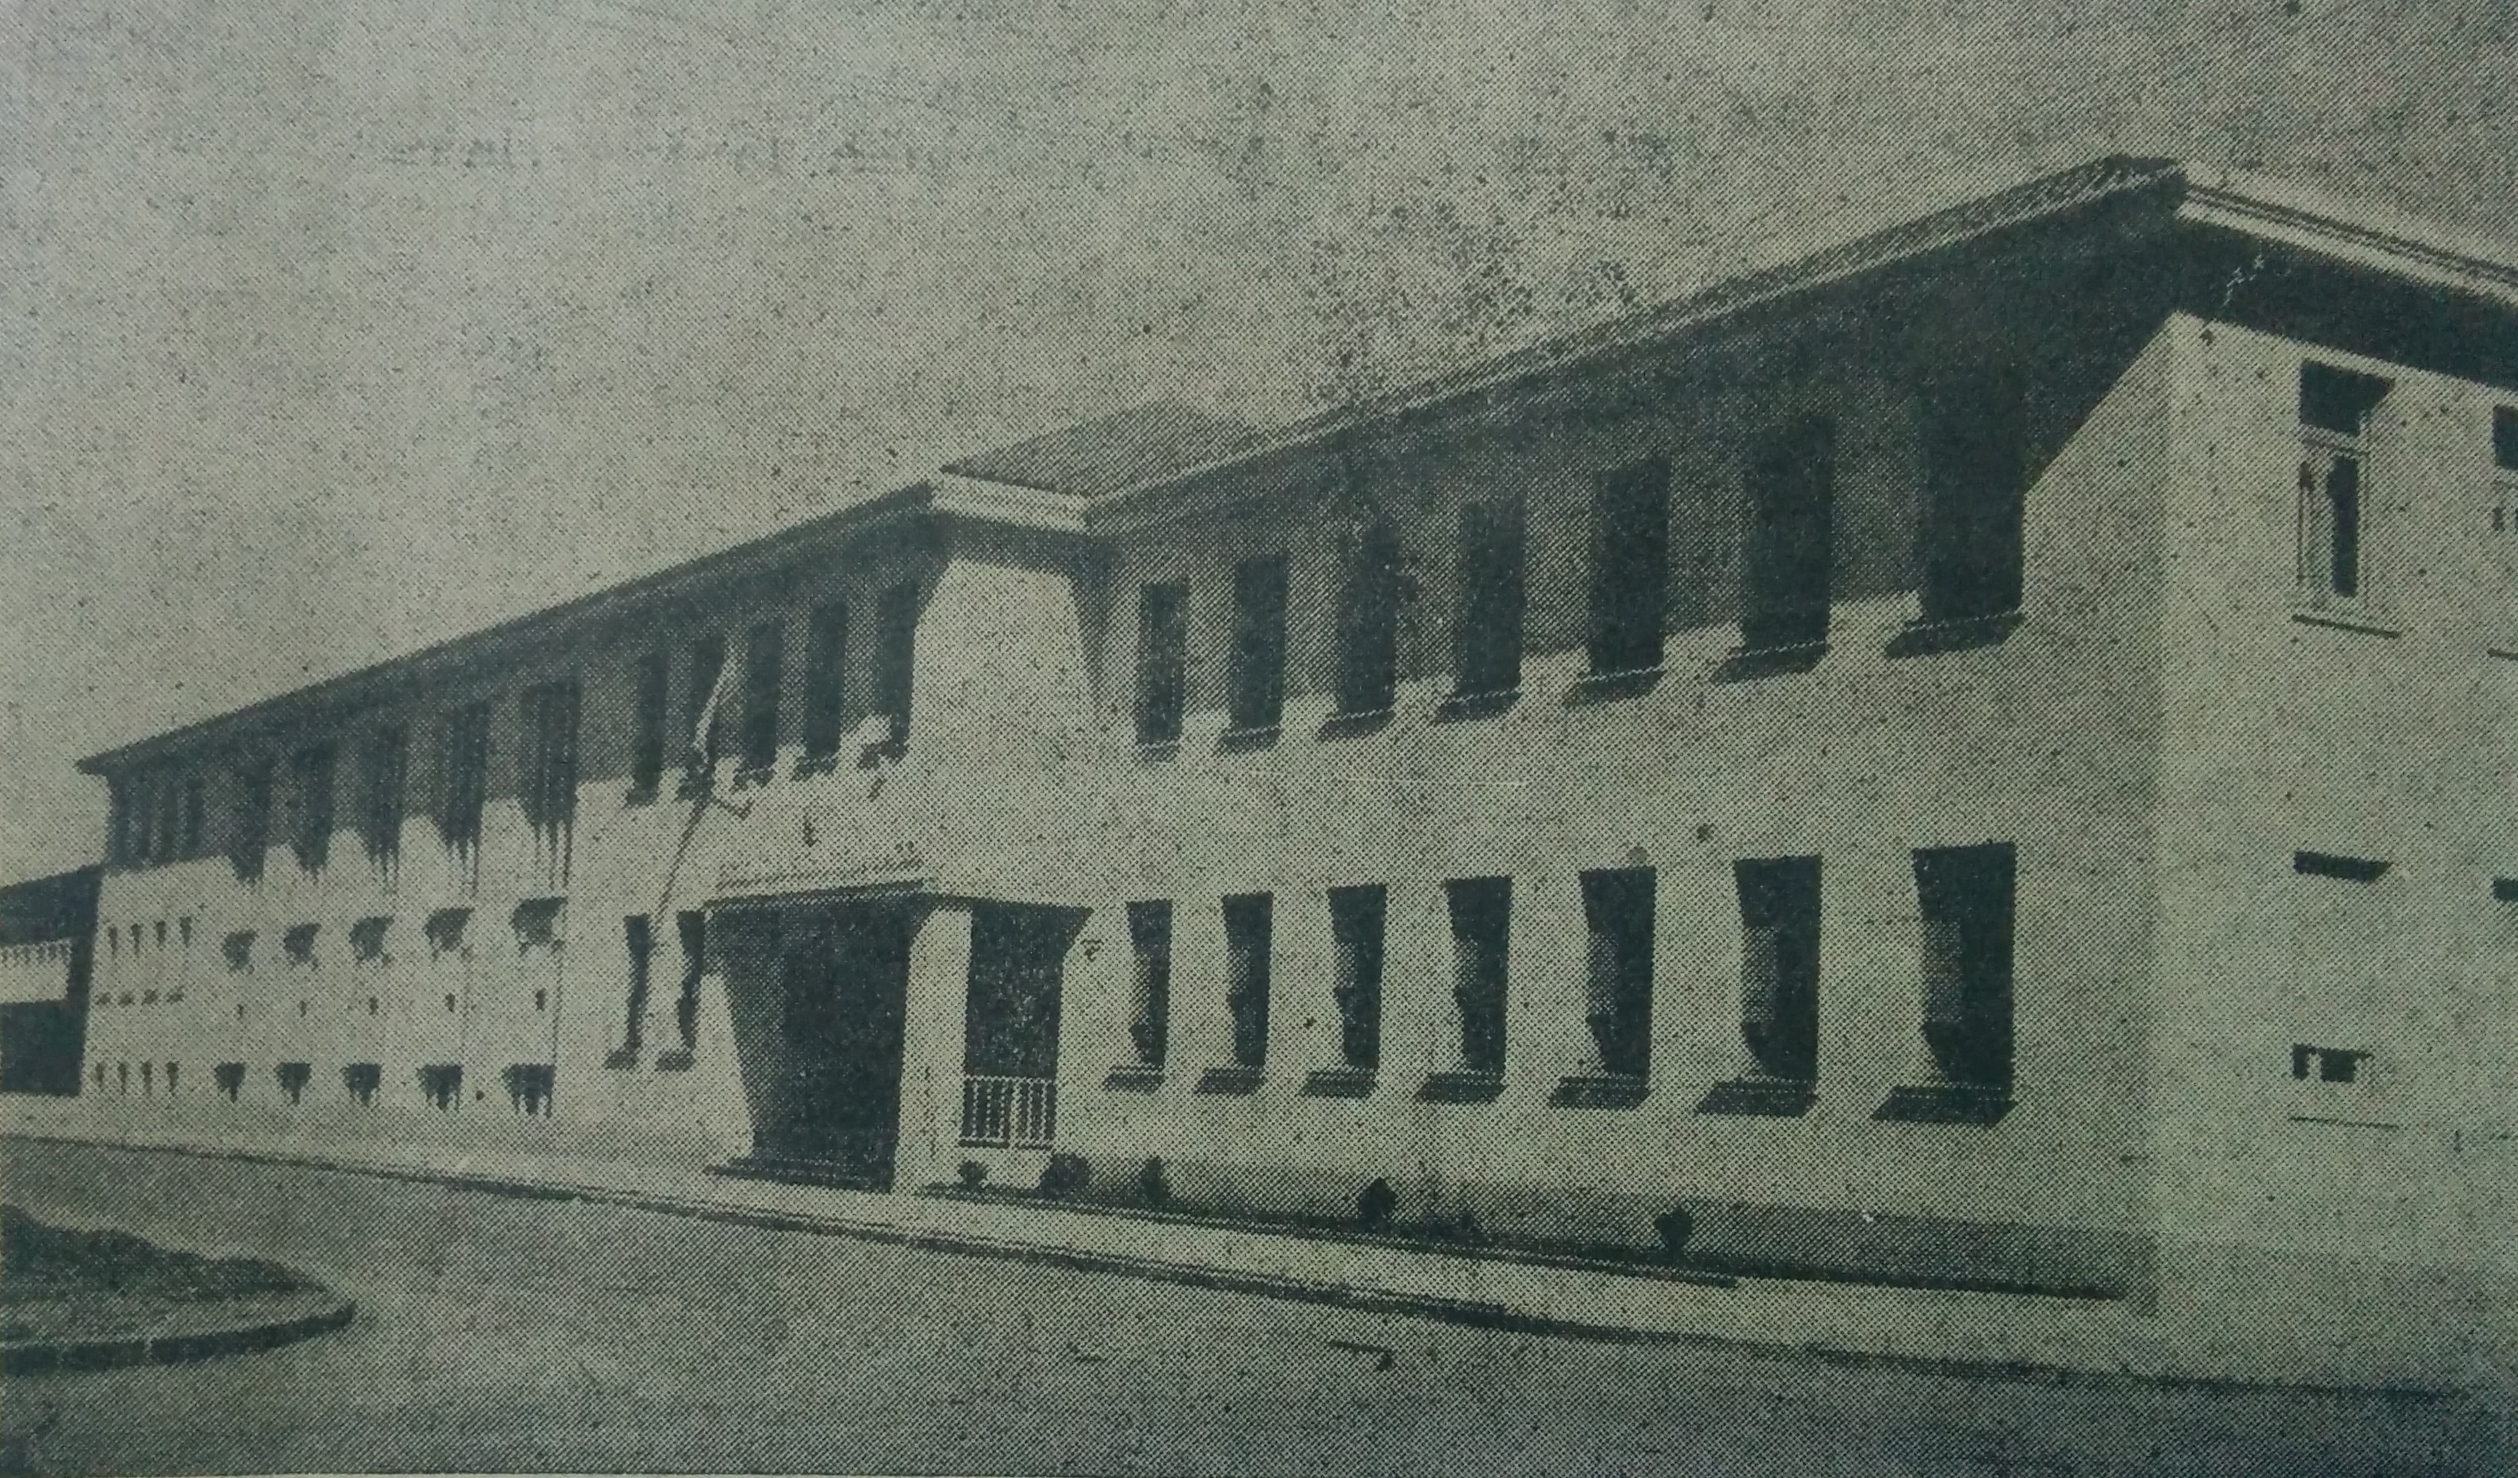 Imponente edificio de la Escuela de Educación Técnica Nº1, Dr. Mariano Moreno", inaugurado en la década de 1950.